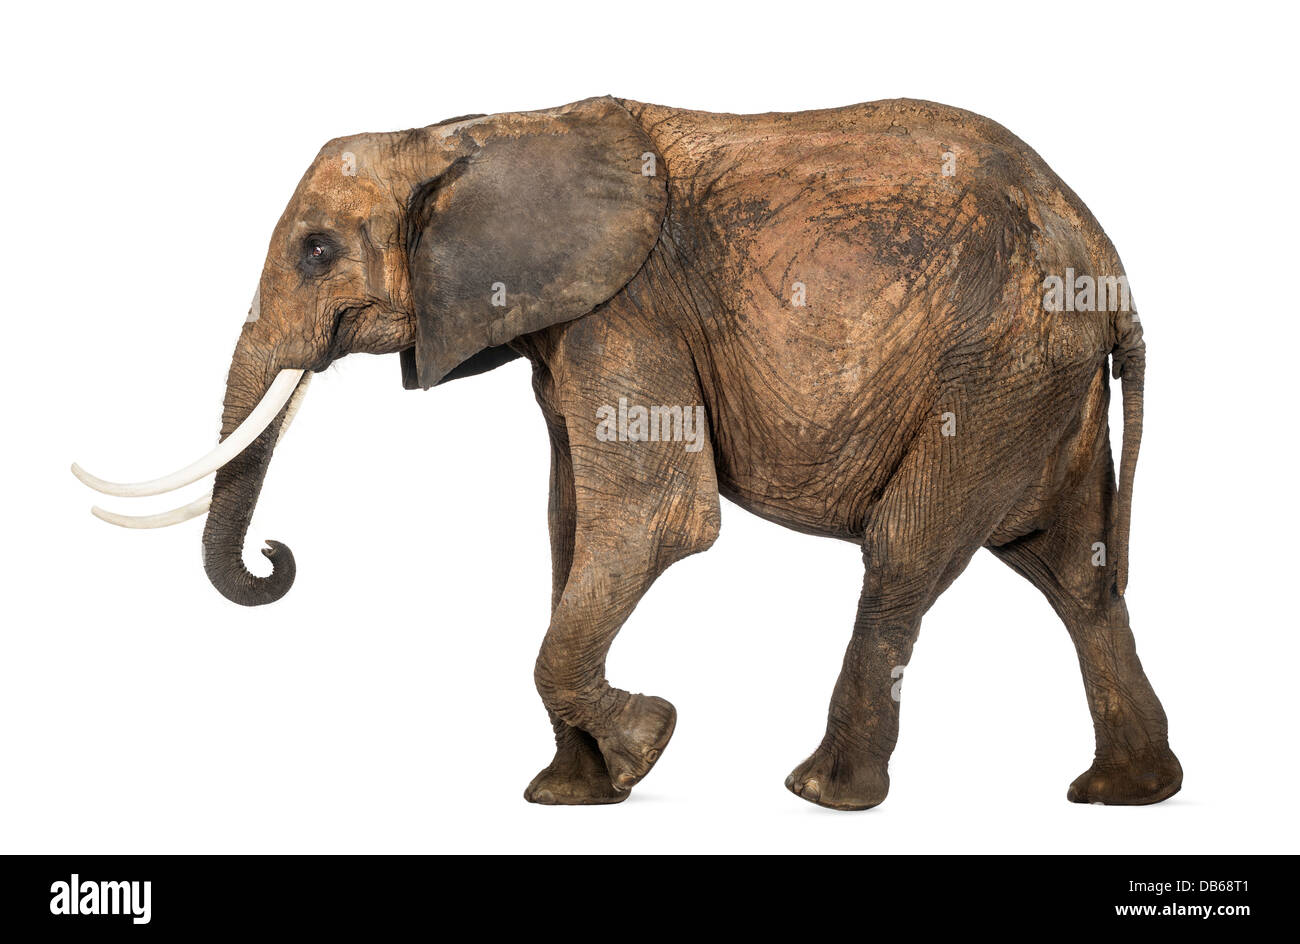 Vista laterale di un elefante africano Loxodonta africana, passeggiate contro uno sfondo bianco Foto Stock